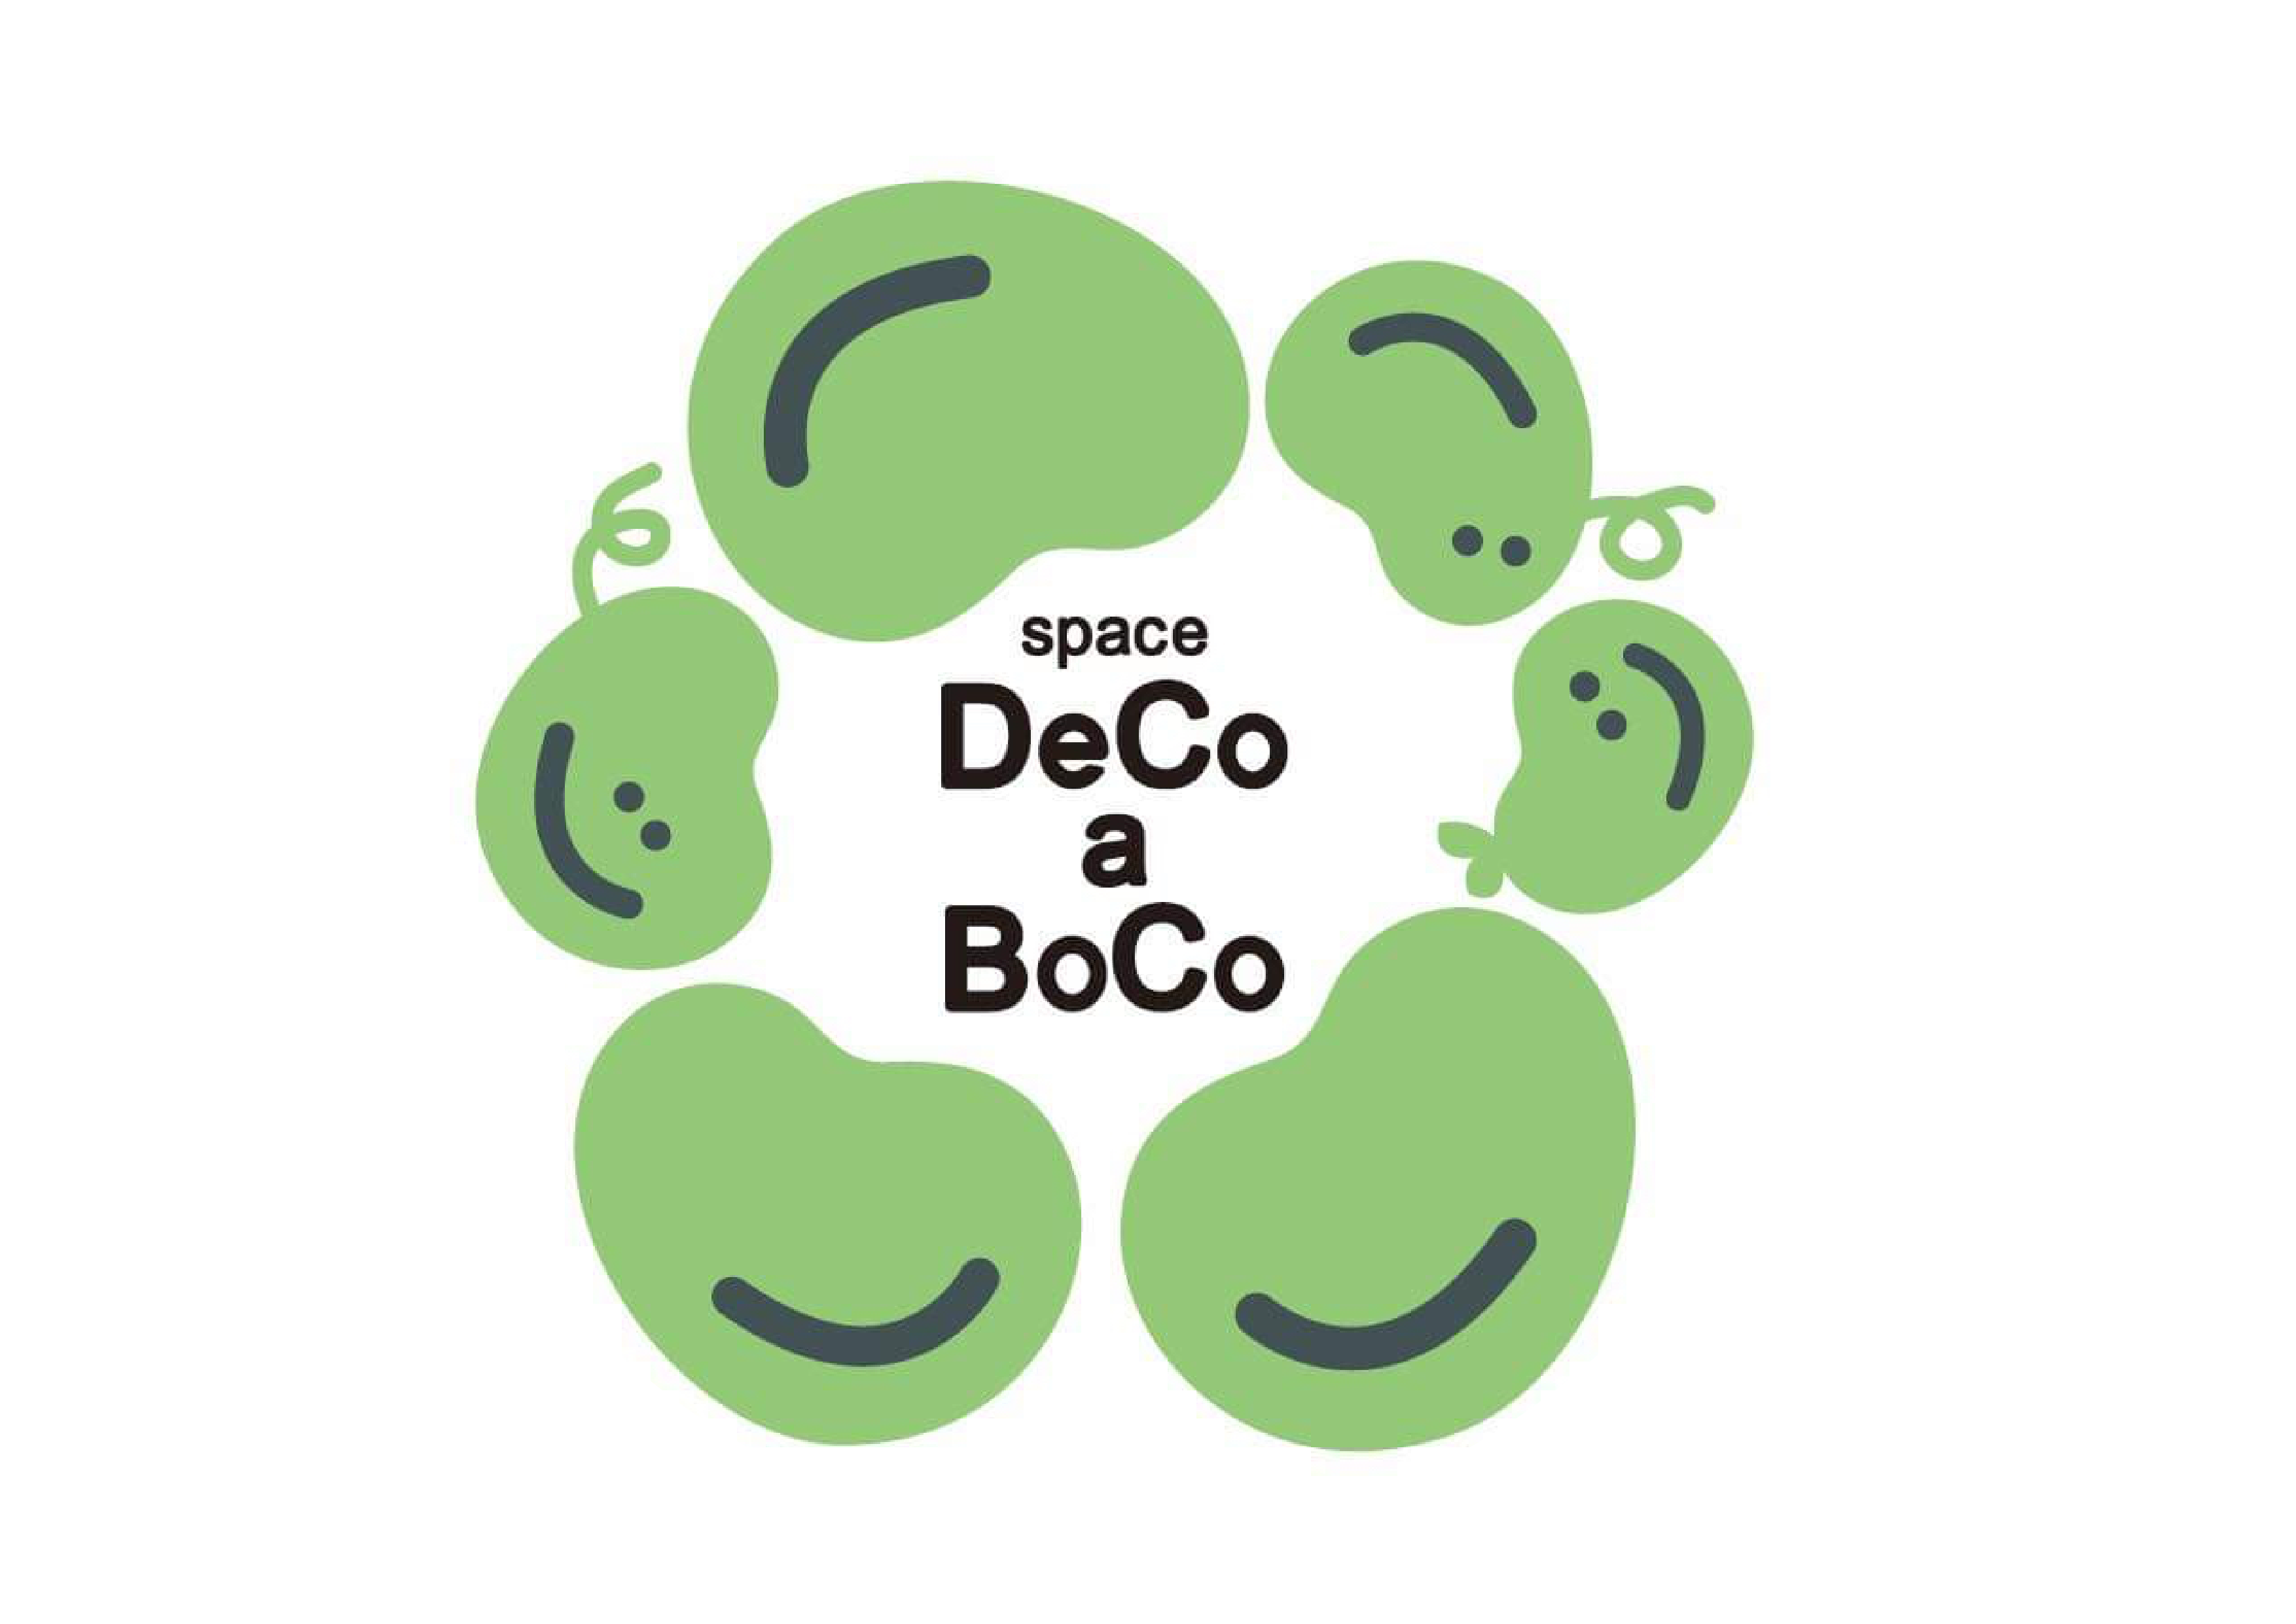 Space DeCo a BoCo